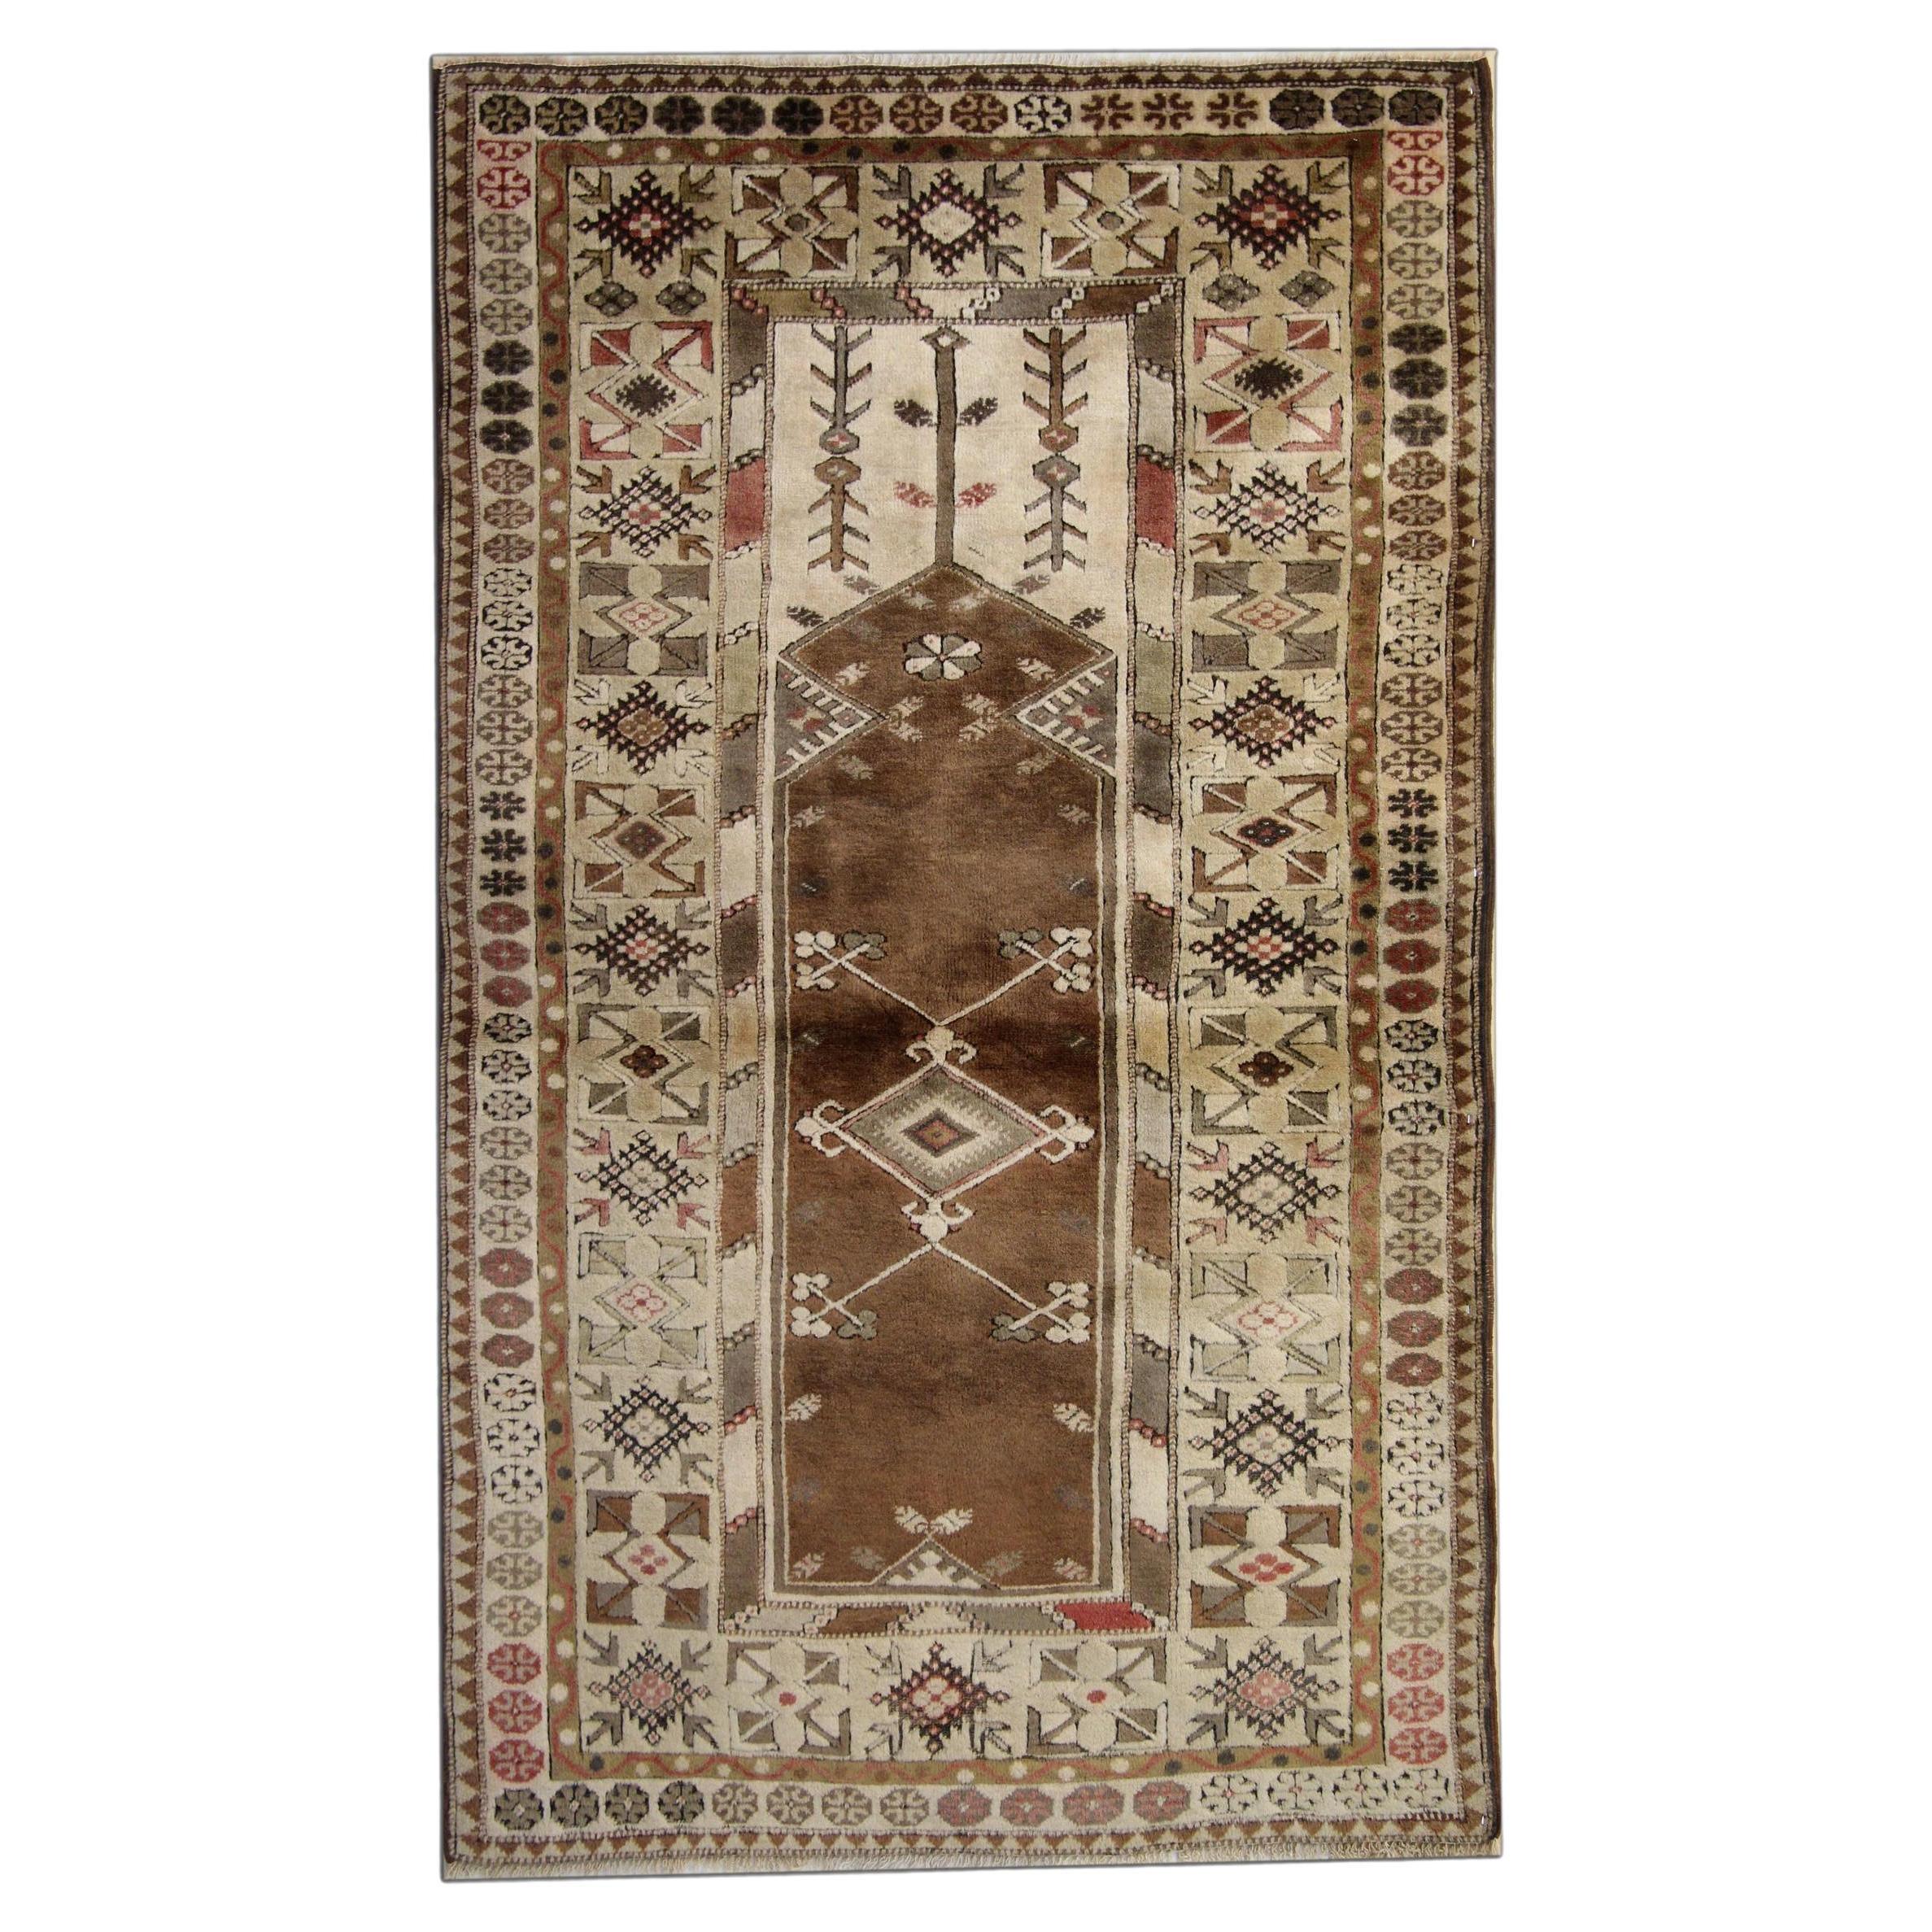 Antique Turkish Rugs, Vintage Rug Milas, Brown Rug, Handmade Carpet 